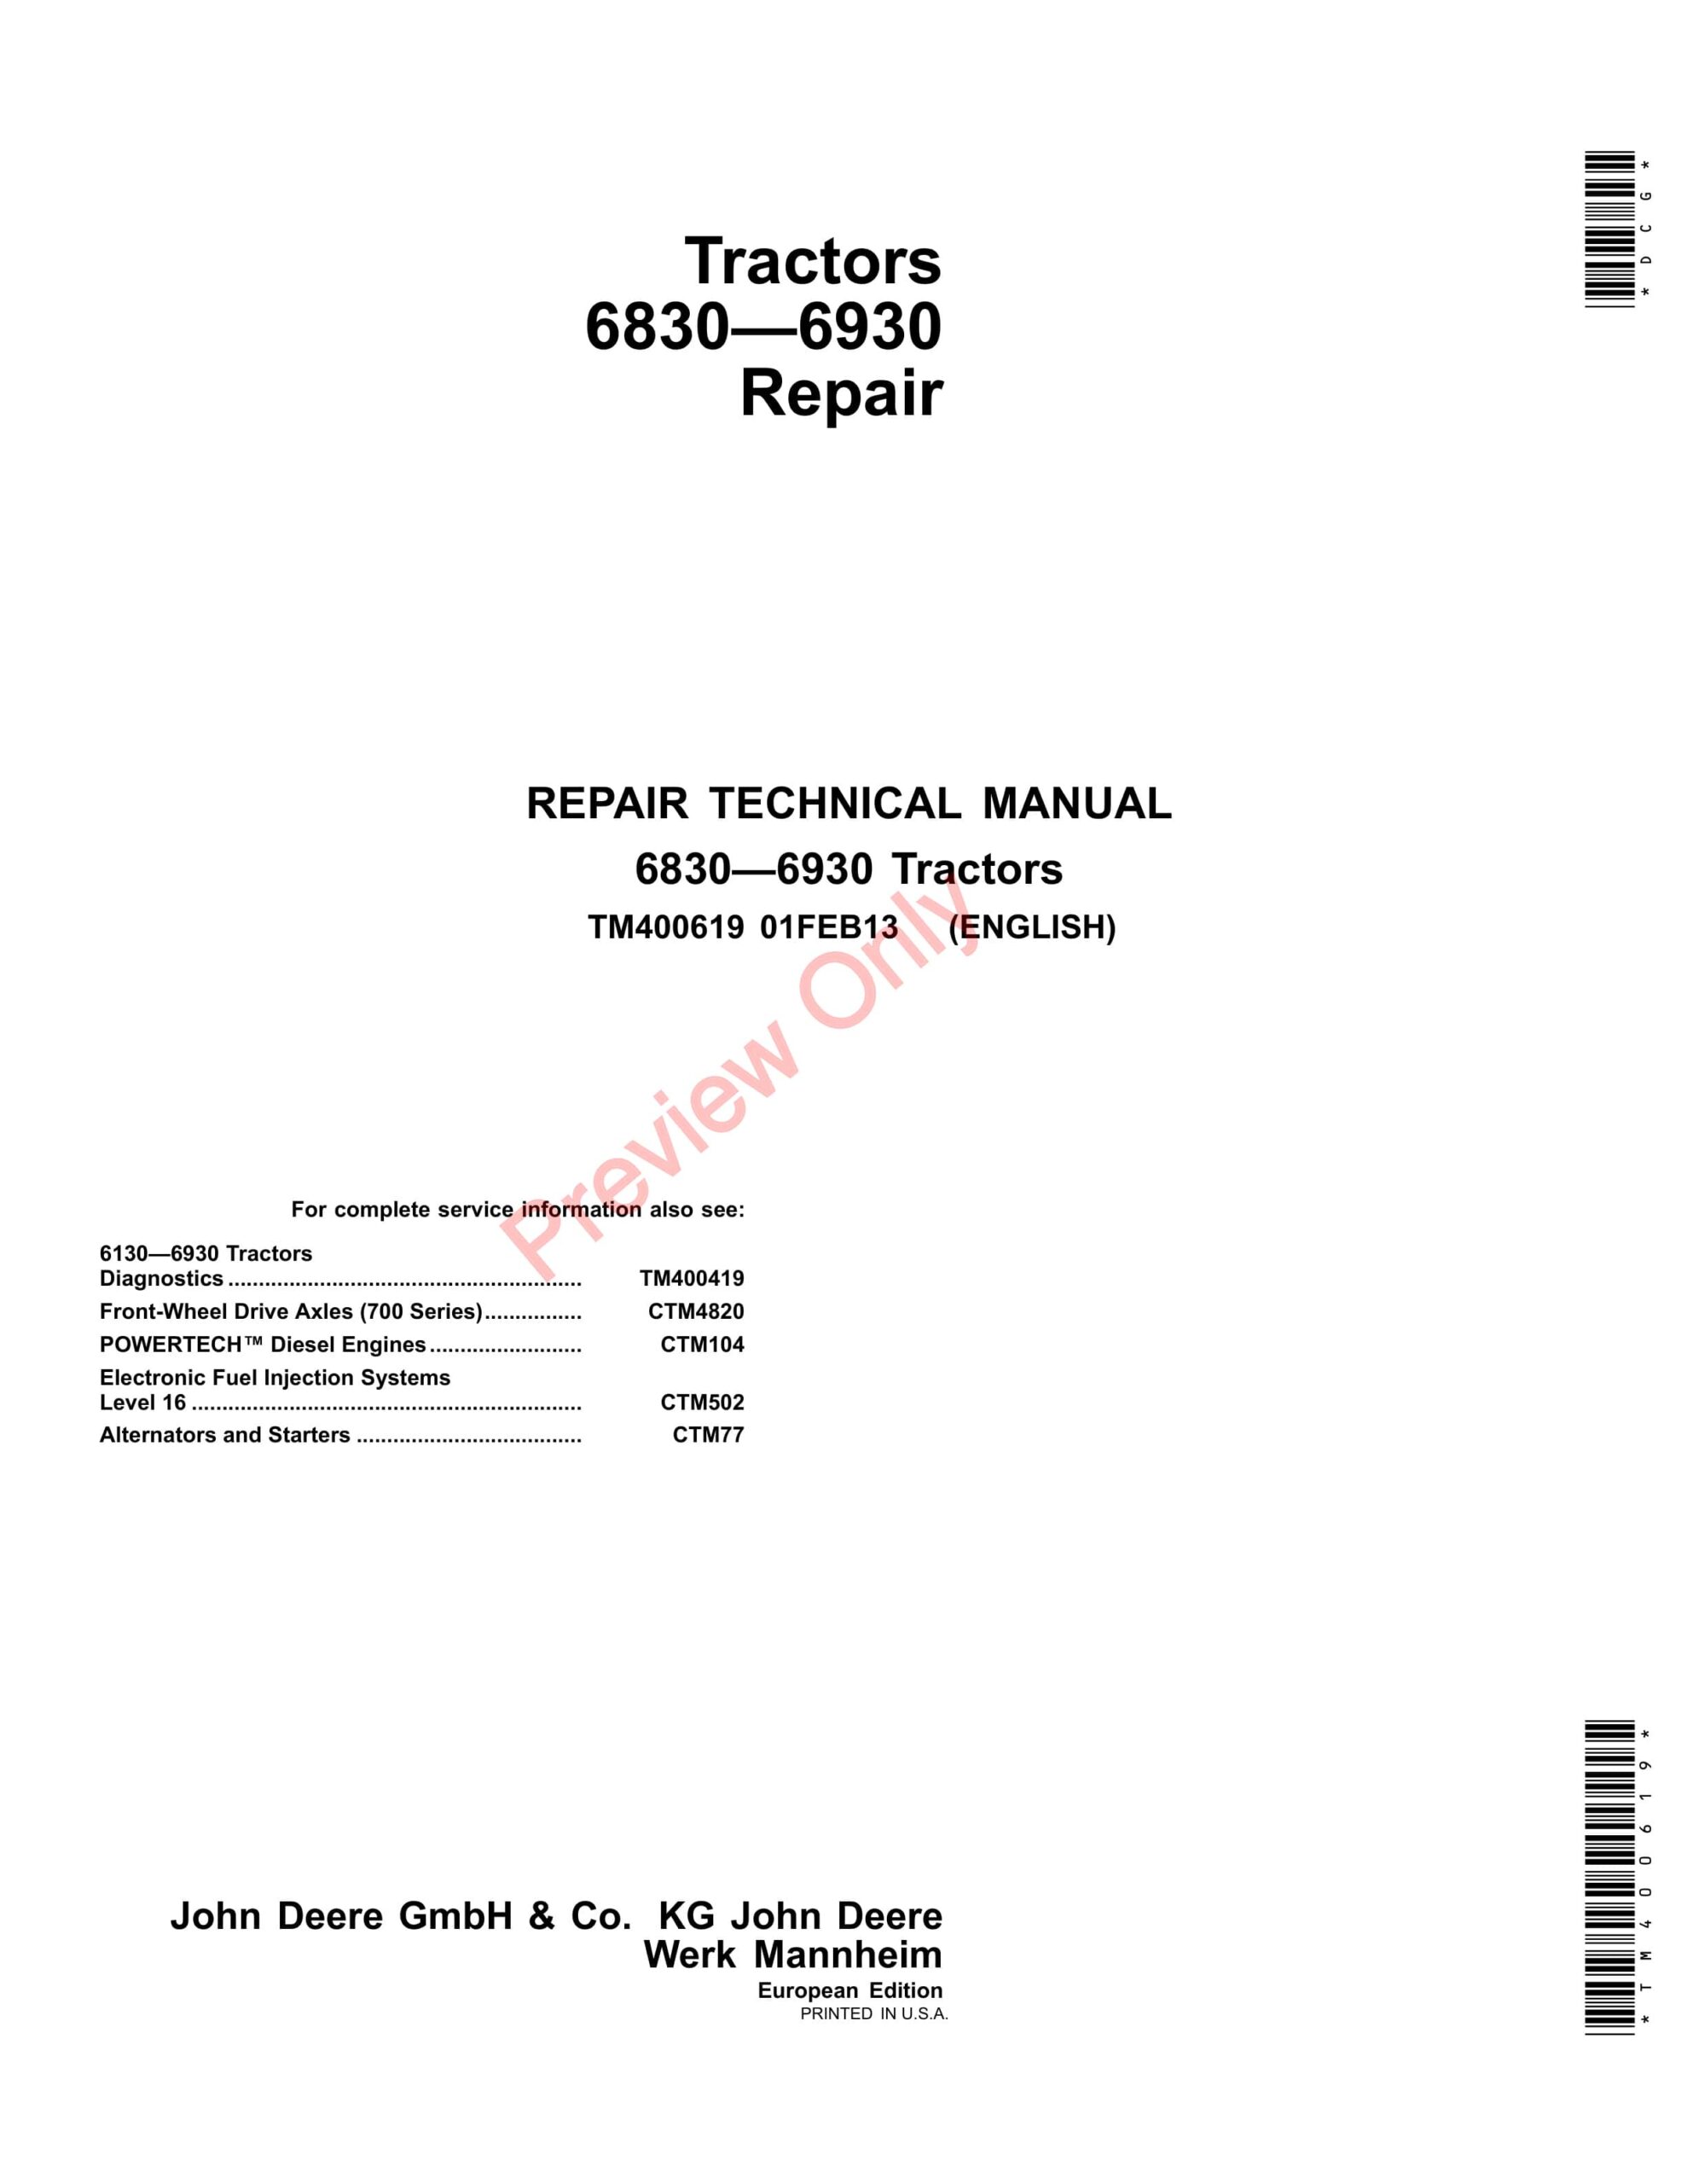 John Deere 6830, 6930 Tractor Repair Technical Manual TM400619 01FEB13-1